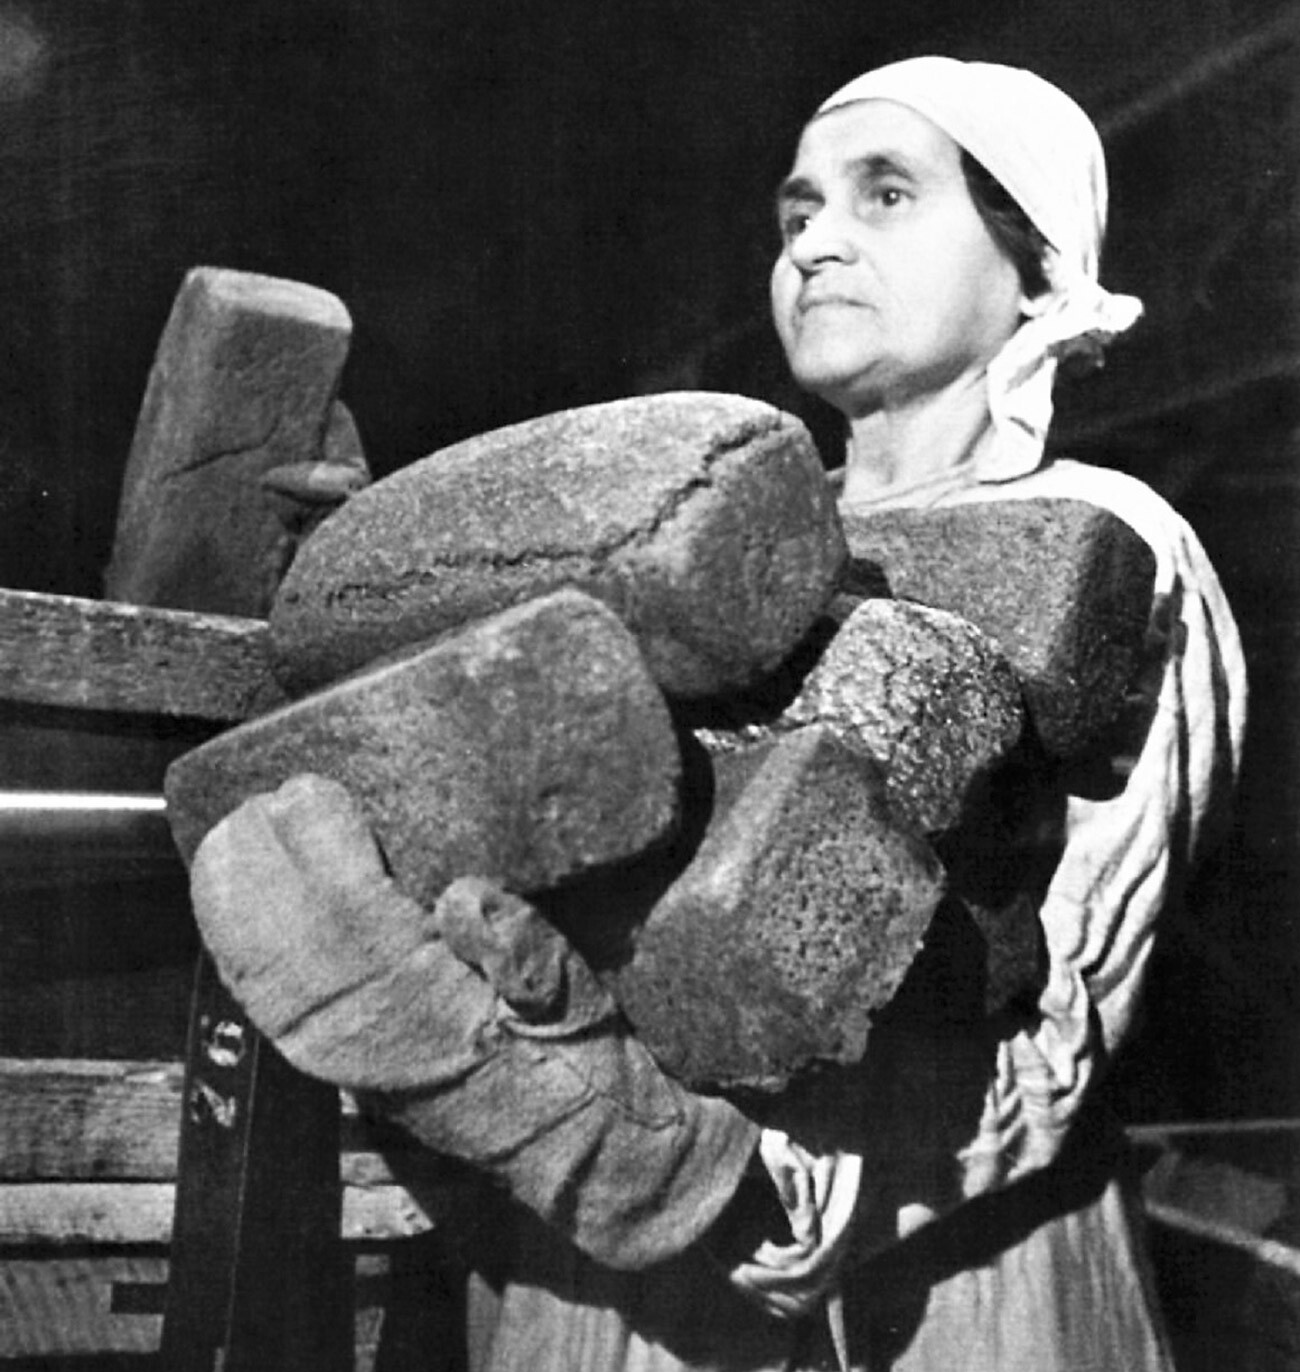 Emilija Čibor, delavka pekarne št. 61, imenovane po A. E. Badajevu, zlaga kruh v škatle za pošiljanje v trgovino v obleganem Leningradu. 